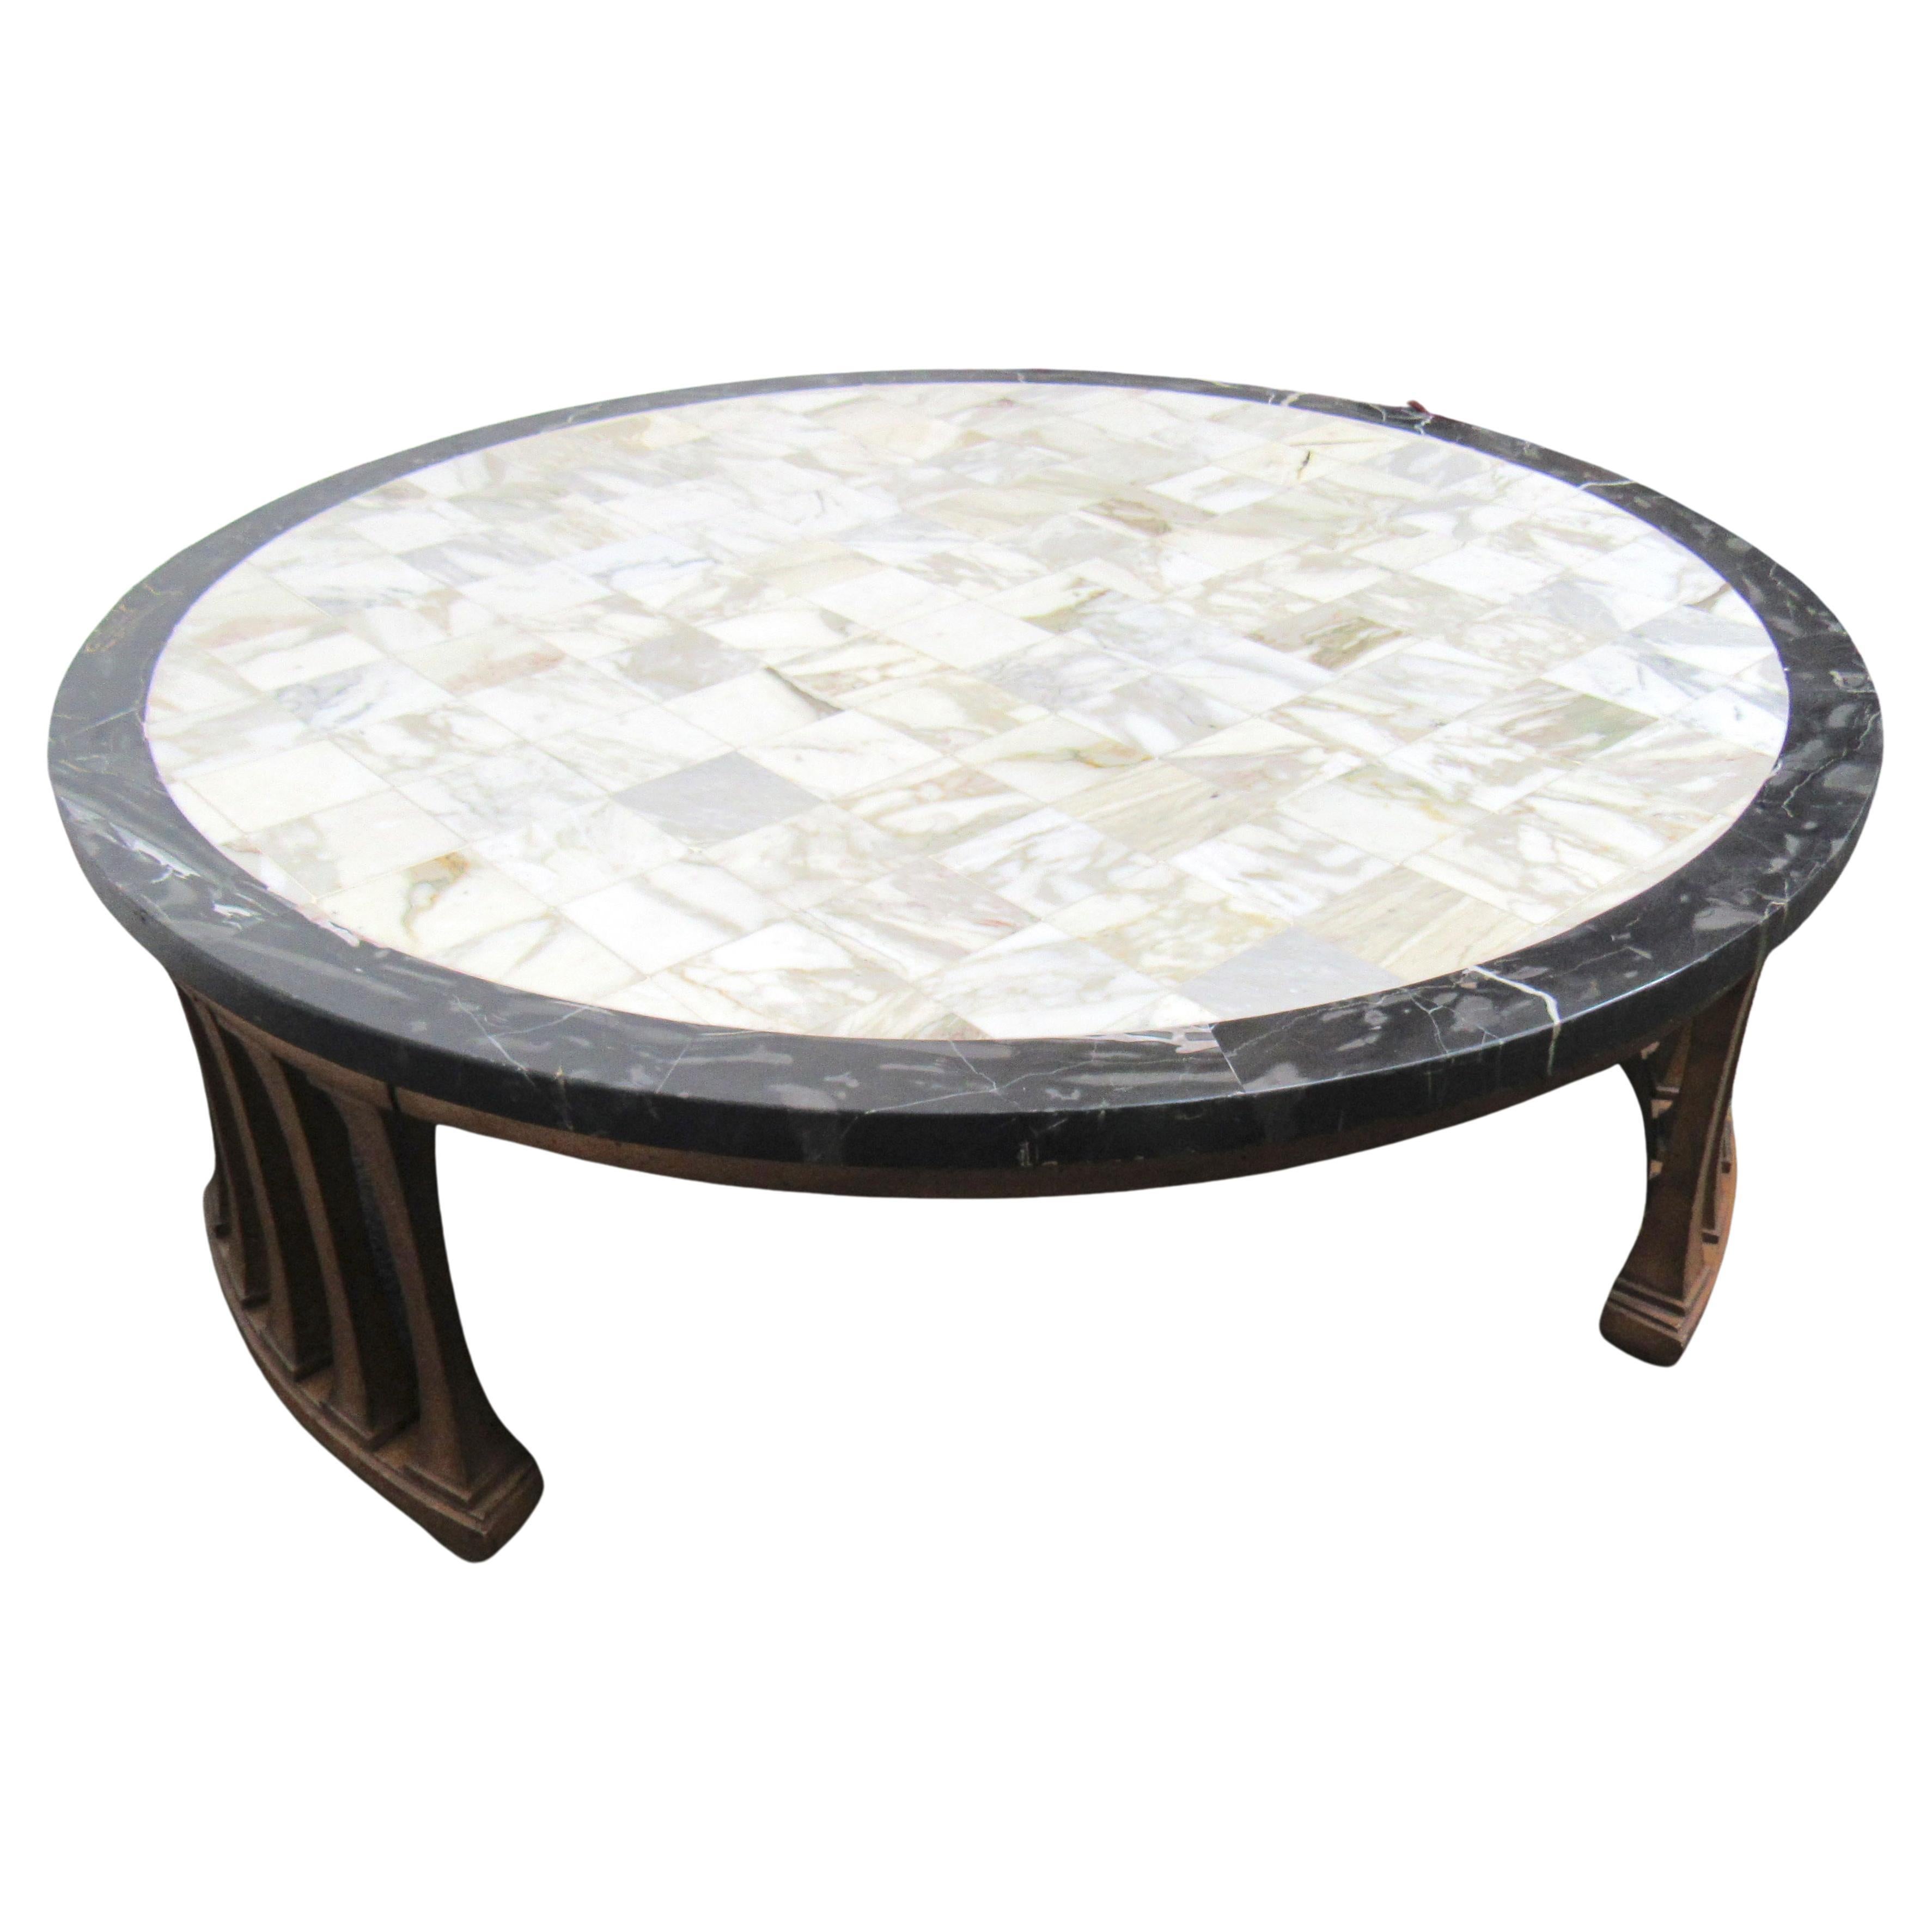 Table basse en marbre de style mi-siècle moderne